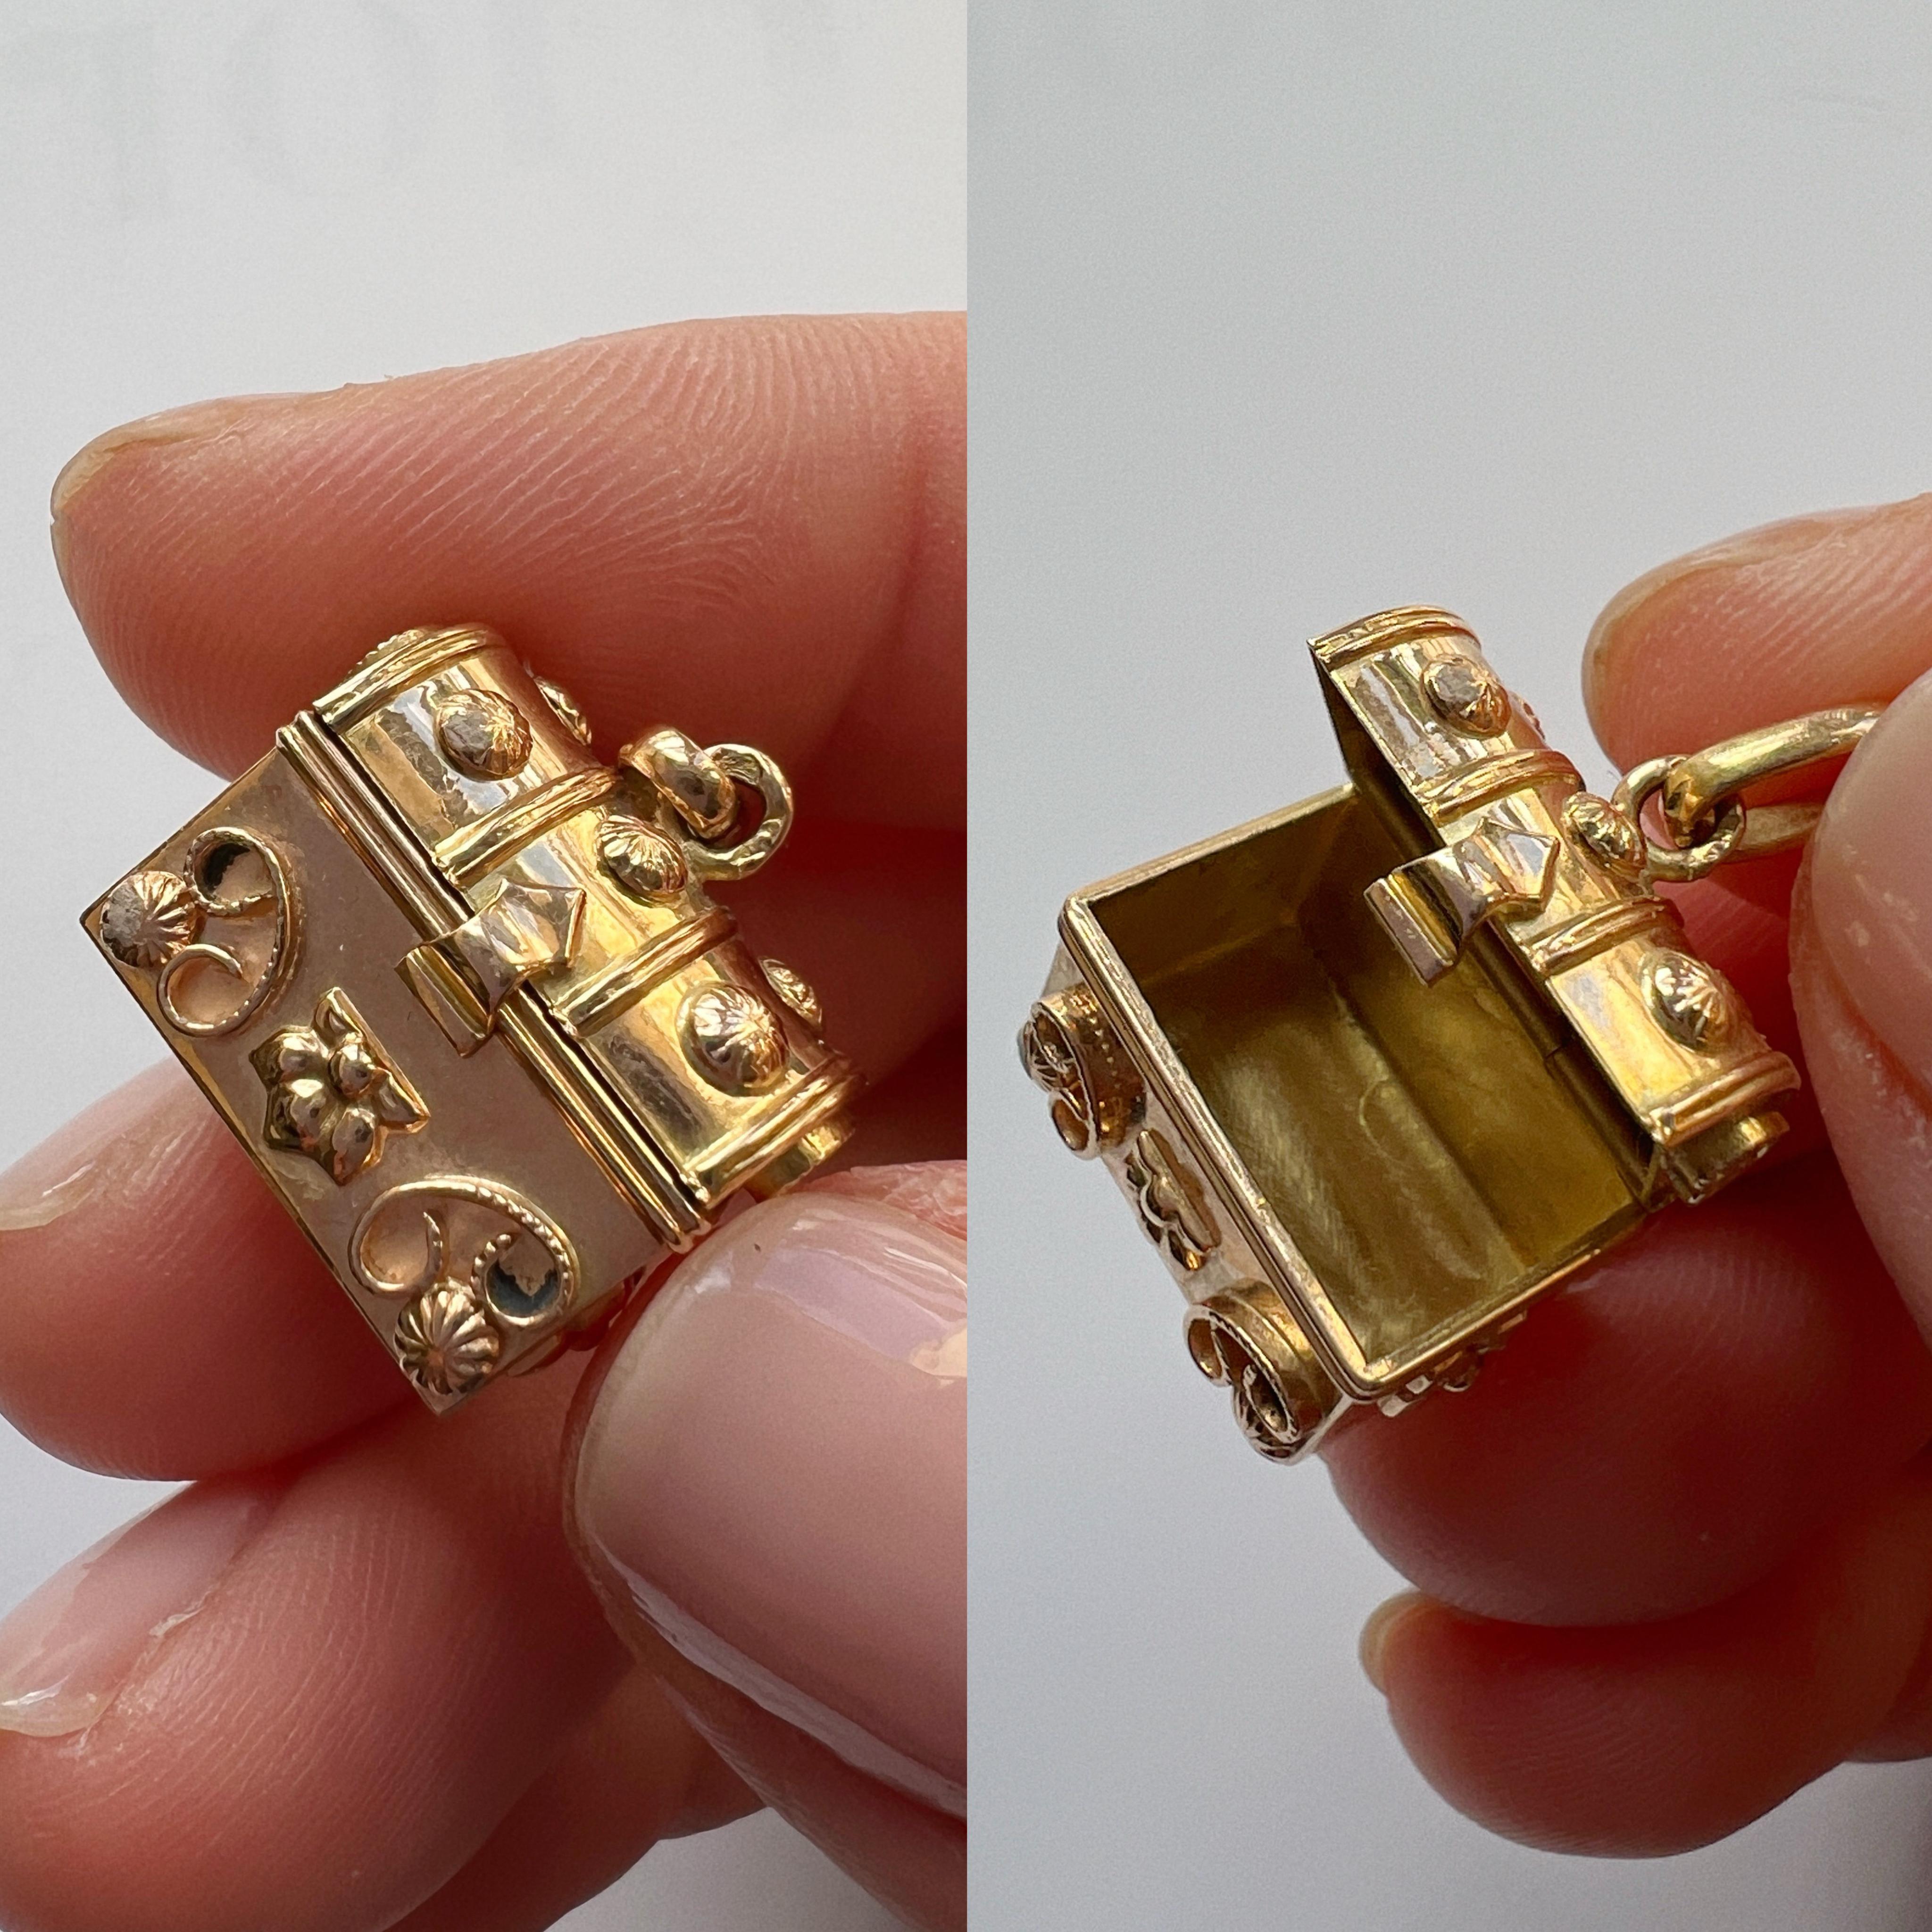 Transportez-vous dans l'ambiance romantique de la France du XIXe siècle avec ce très mignon pendentif en or 18 carats, orné d'une charmante boîte à trésors qui séduit par son allure délicate.

Ouvrez le petit couvercle et vous découvrirez un monde